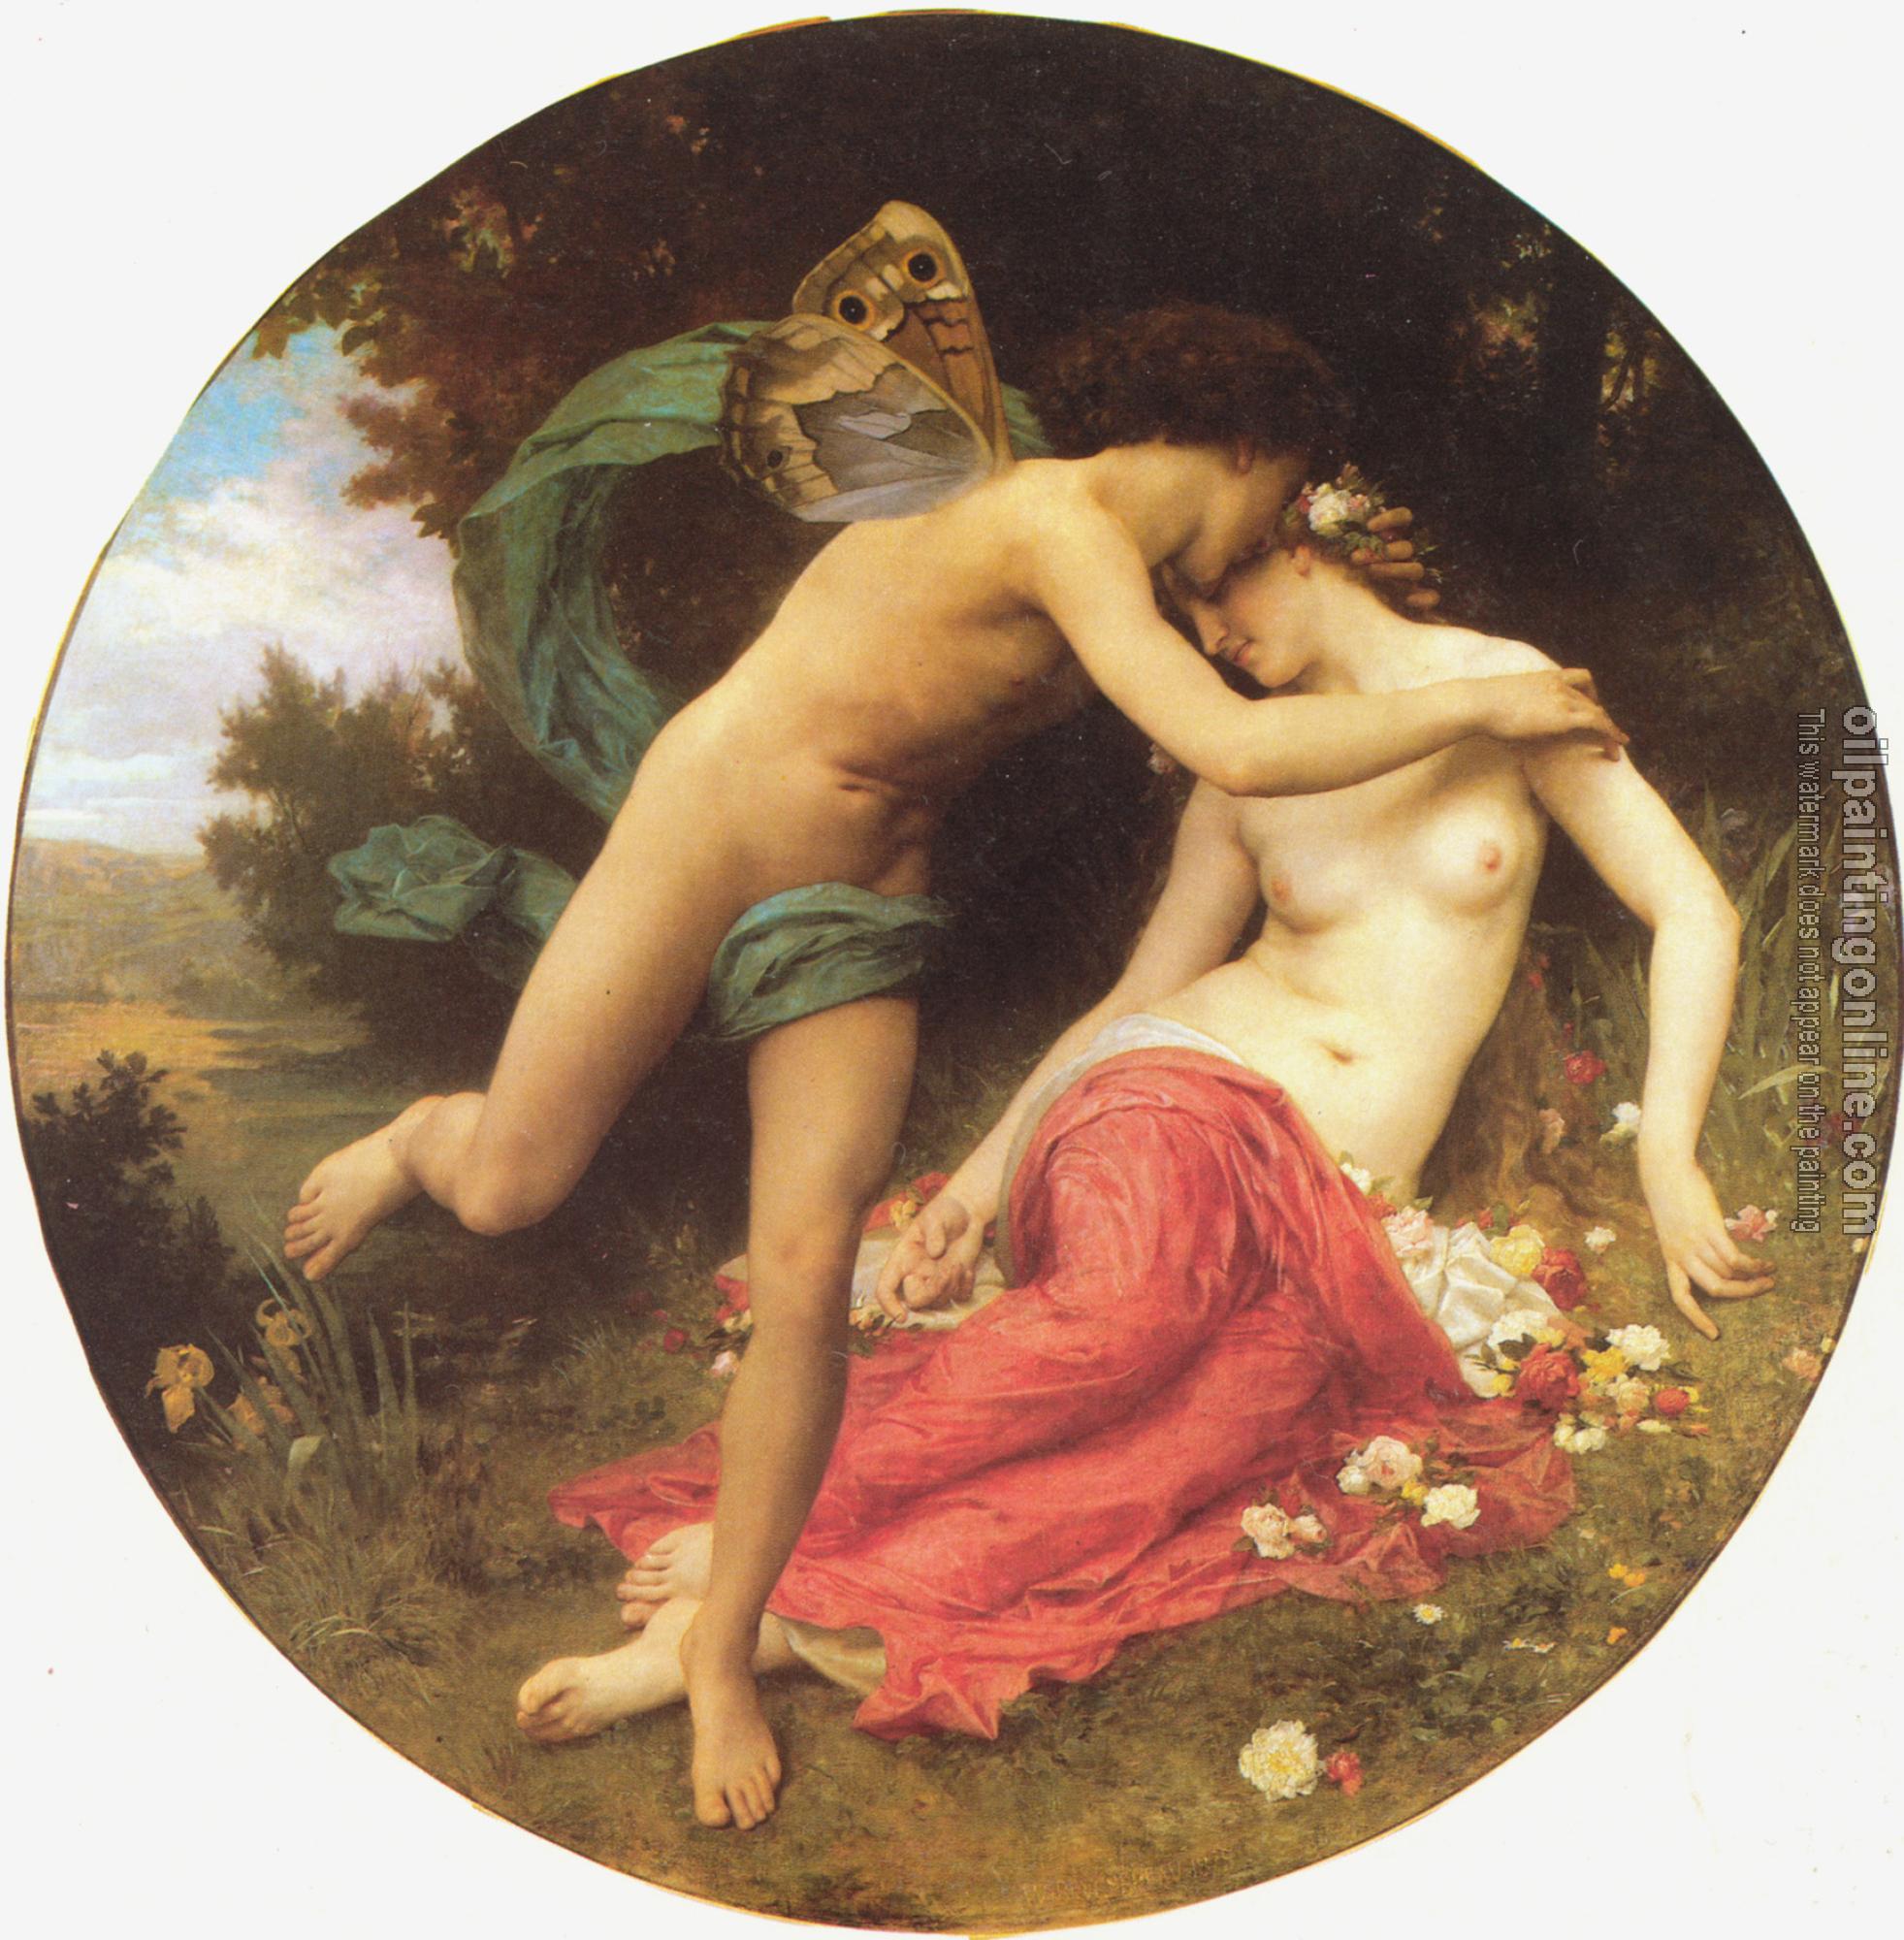 Bouguereau, William-Adolphe - Flore et Zephyre(Flora and Zephyr)